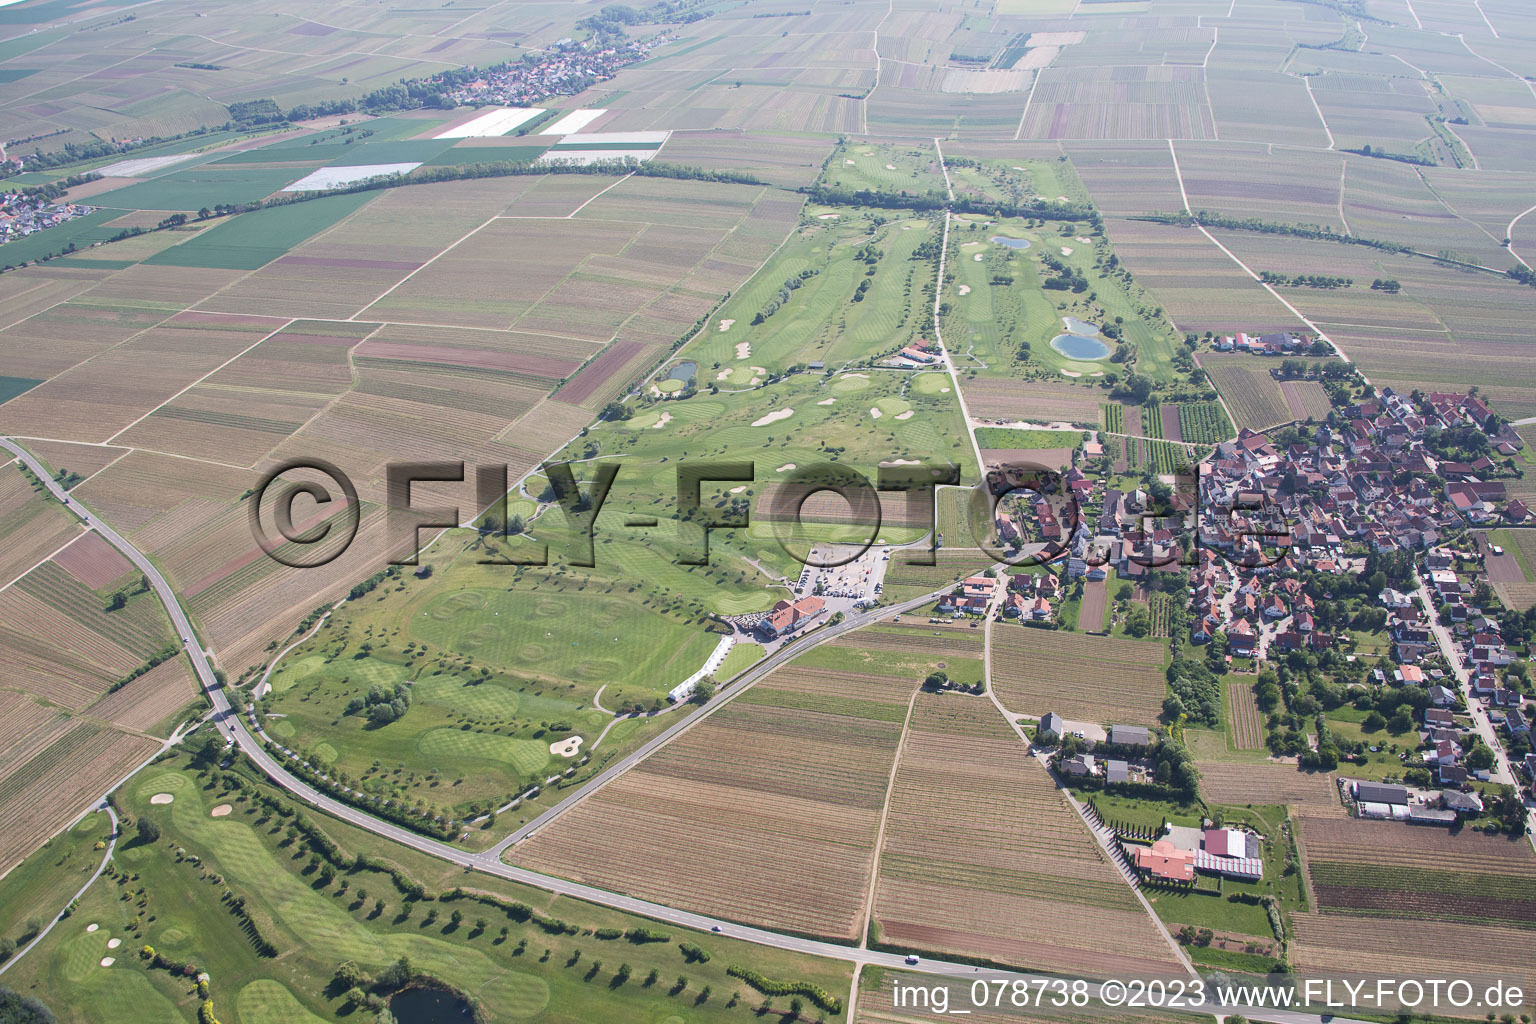 Terrain de golf à Dackenheim dans le département Rhénanie-Palatinat, Allemagne vue d'en haut